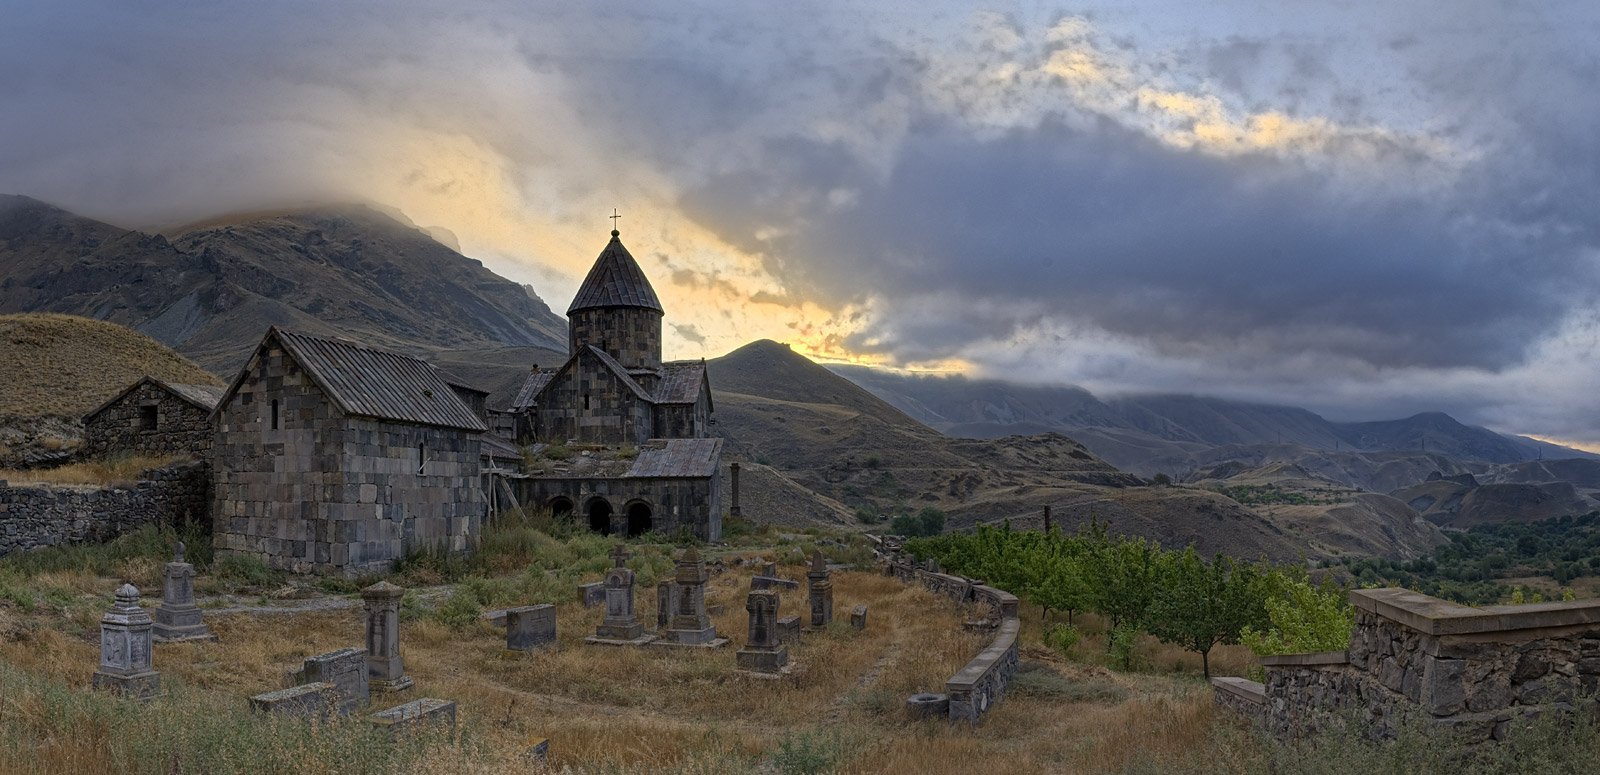 Сел арм. Воротнаванк монастырь. Воротнаванк Армения. Церковь варатнаванг в Армении. Церковь Сисиан Армения.